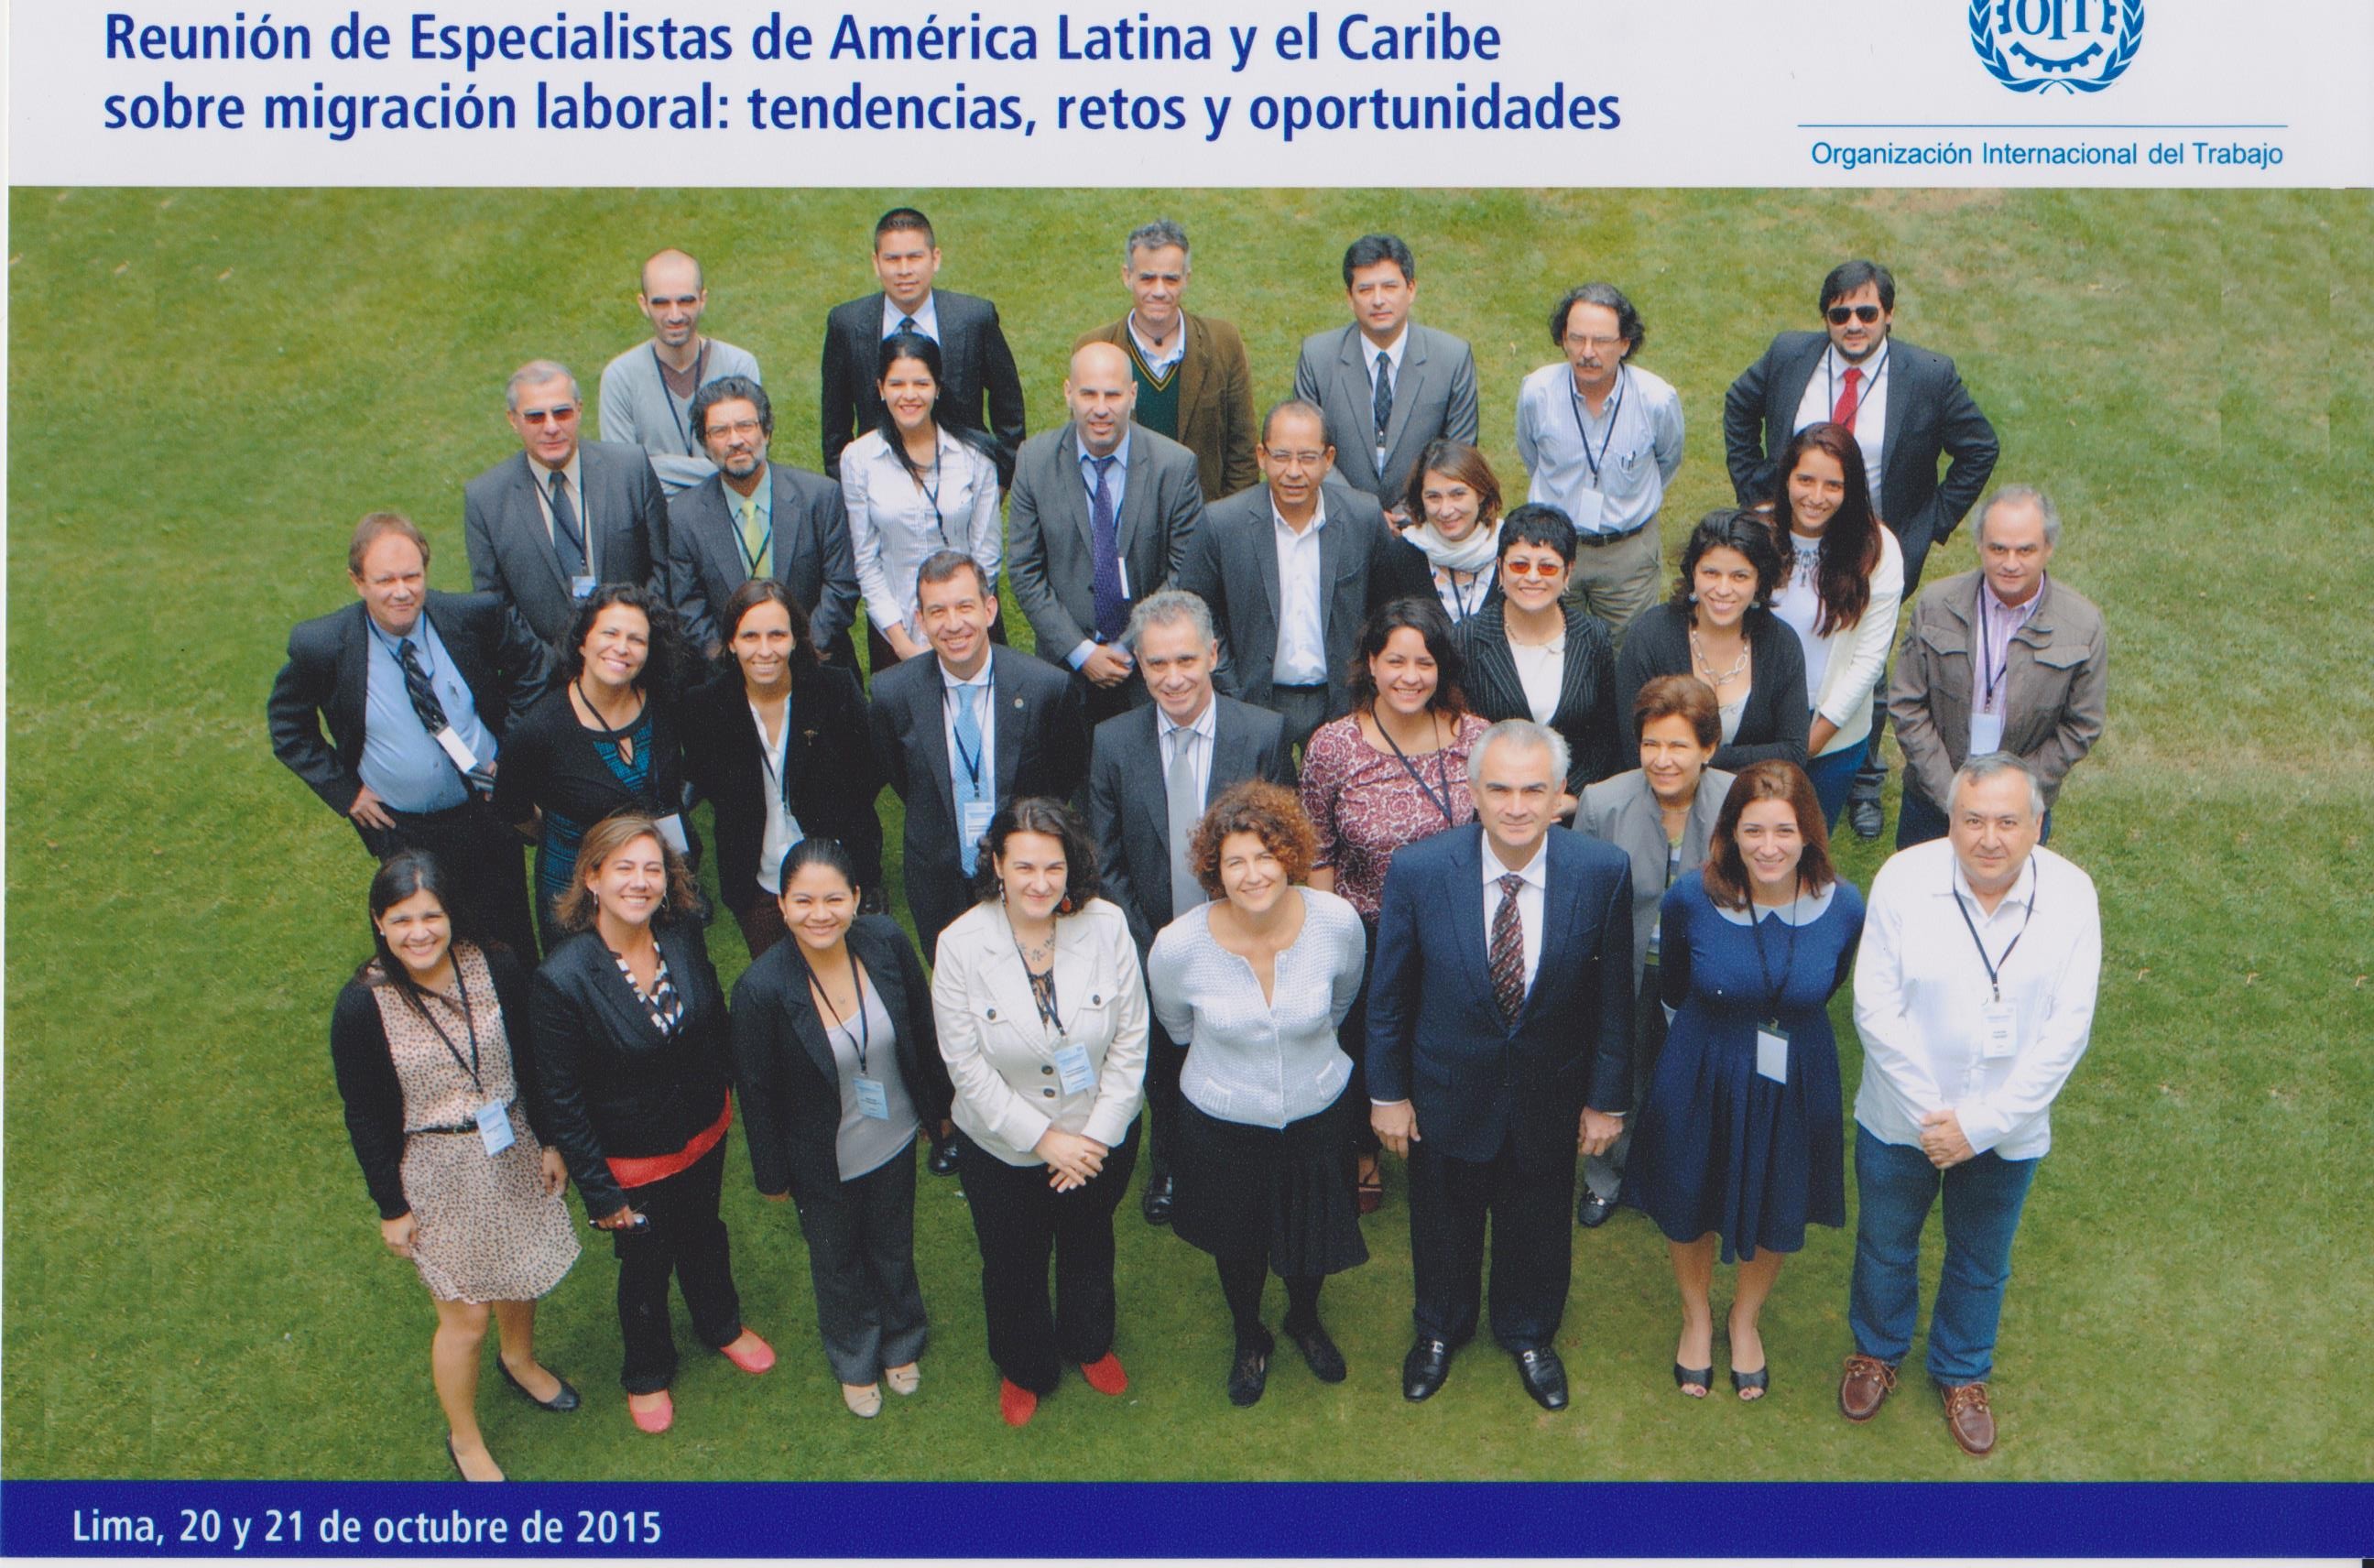 Reunión de especialistas de América Latina y el Caribe sobre migración laboral: tendencias, retos y oportunidades